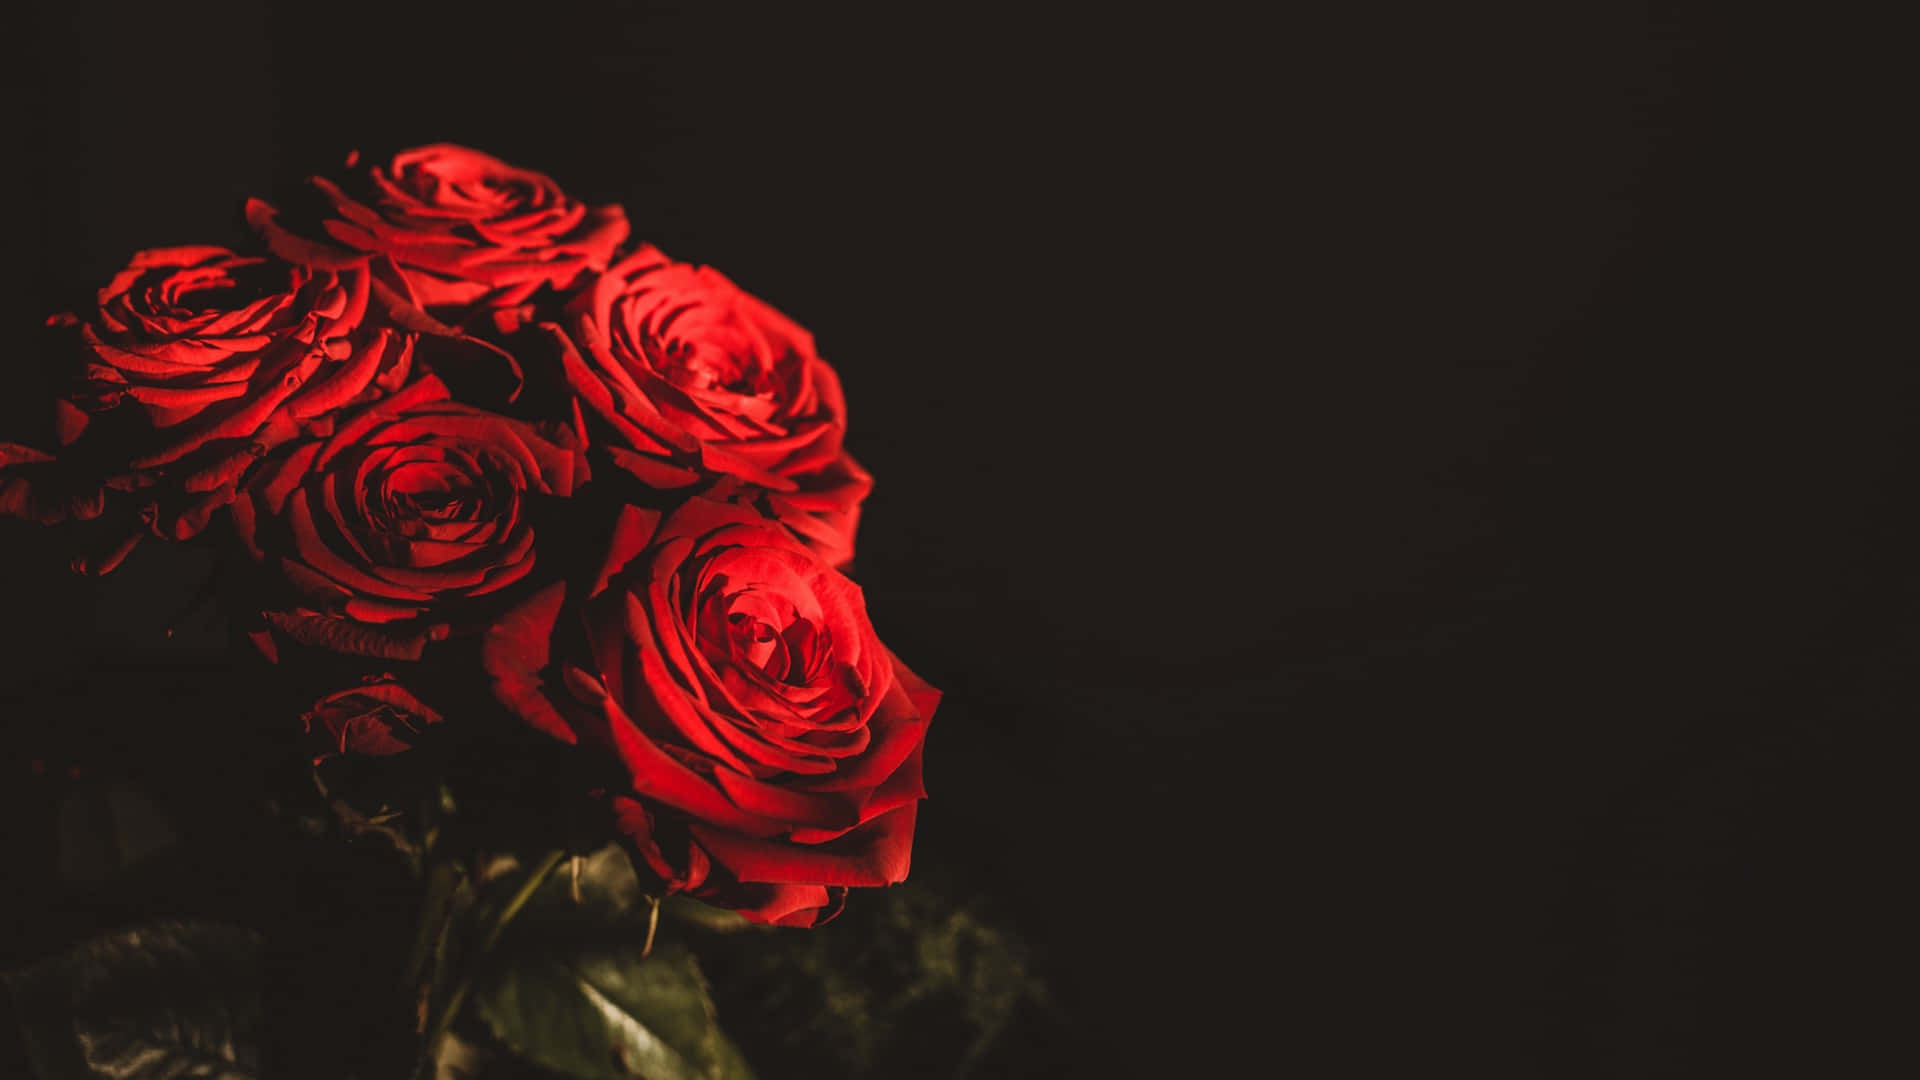 Vibrant_ Red_ Roses_ Dark_ Background_4 K.jpg Wallpaper